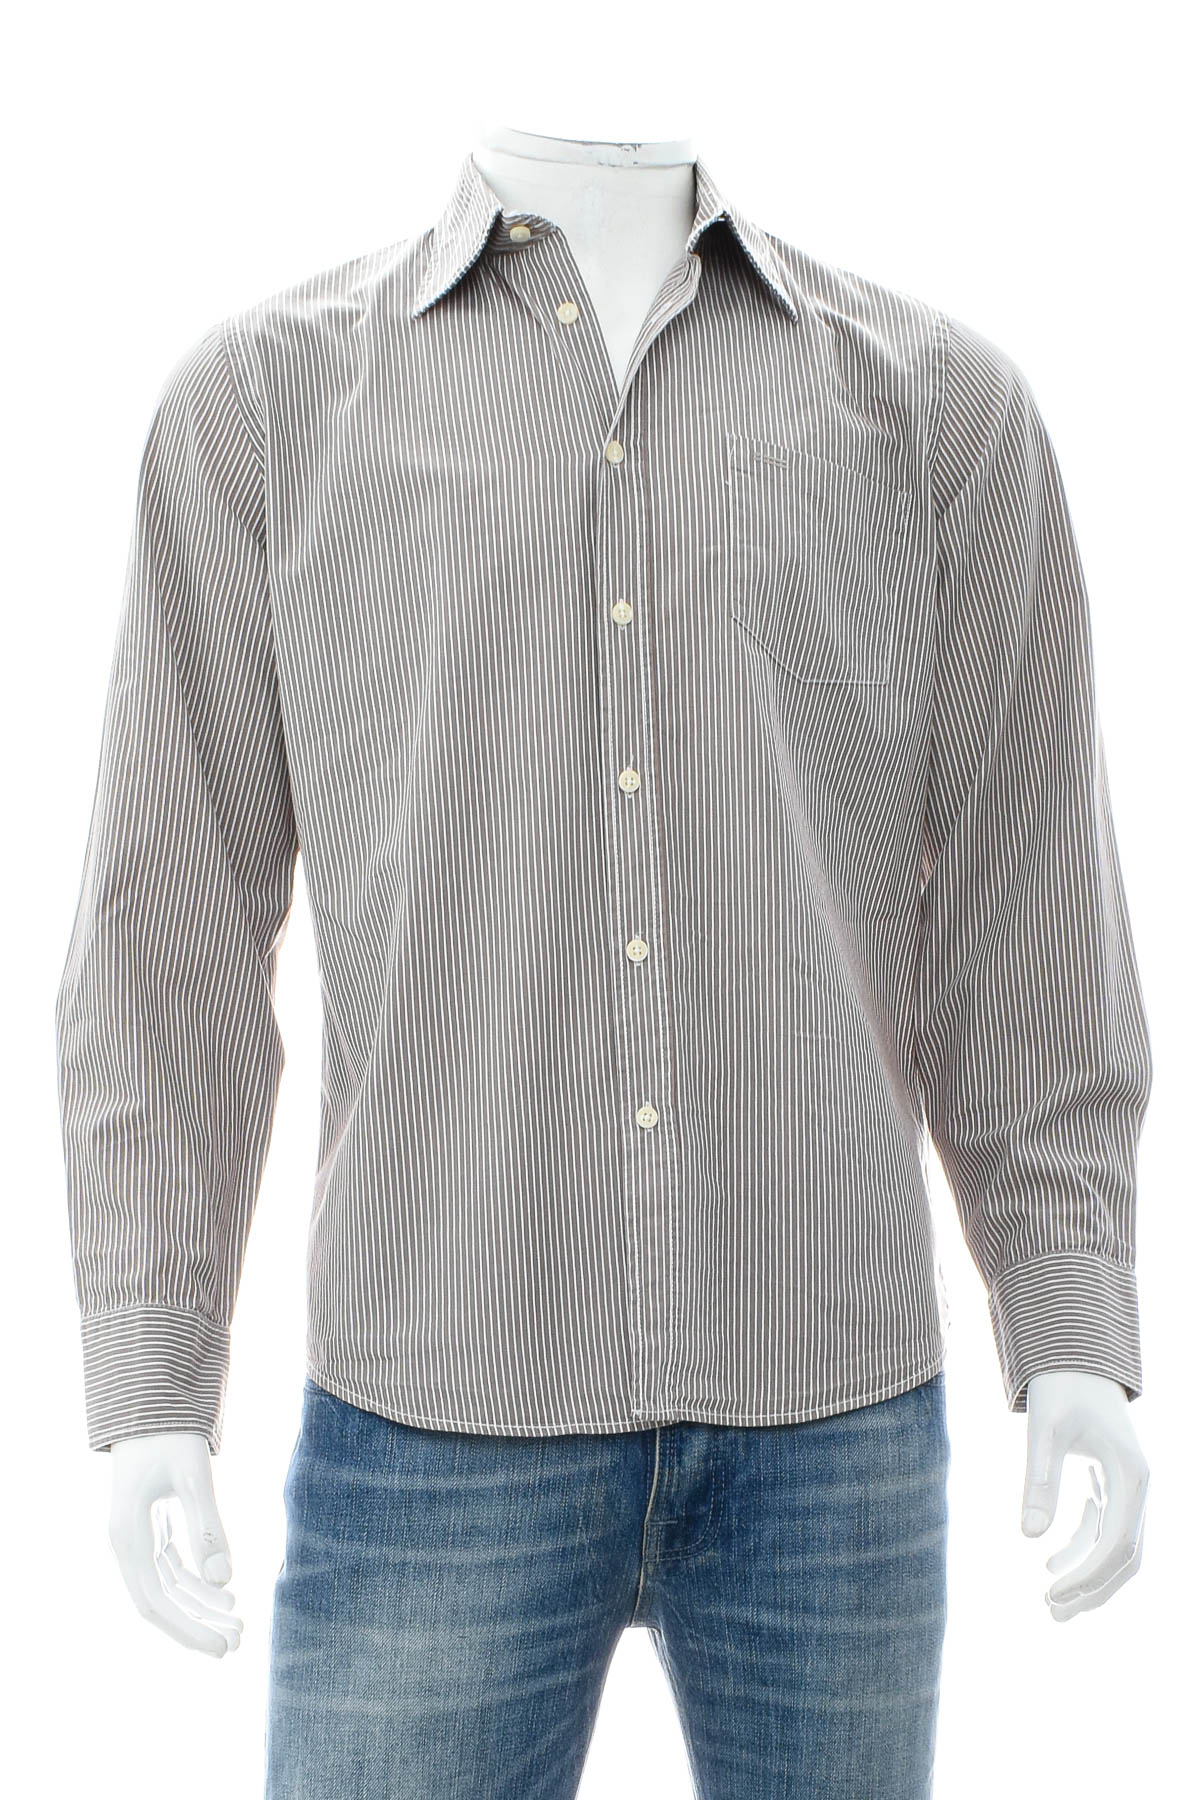 Ανδρικό πουκάμισο - Marc O' Polo - 0